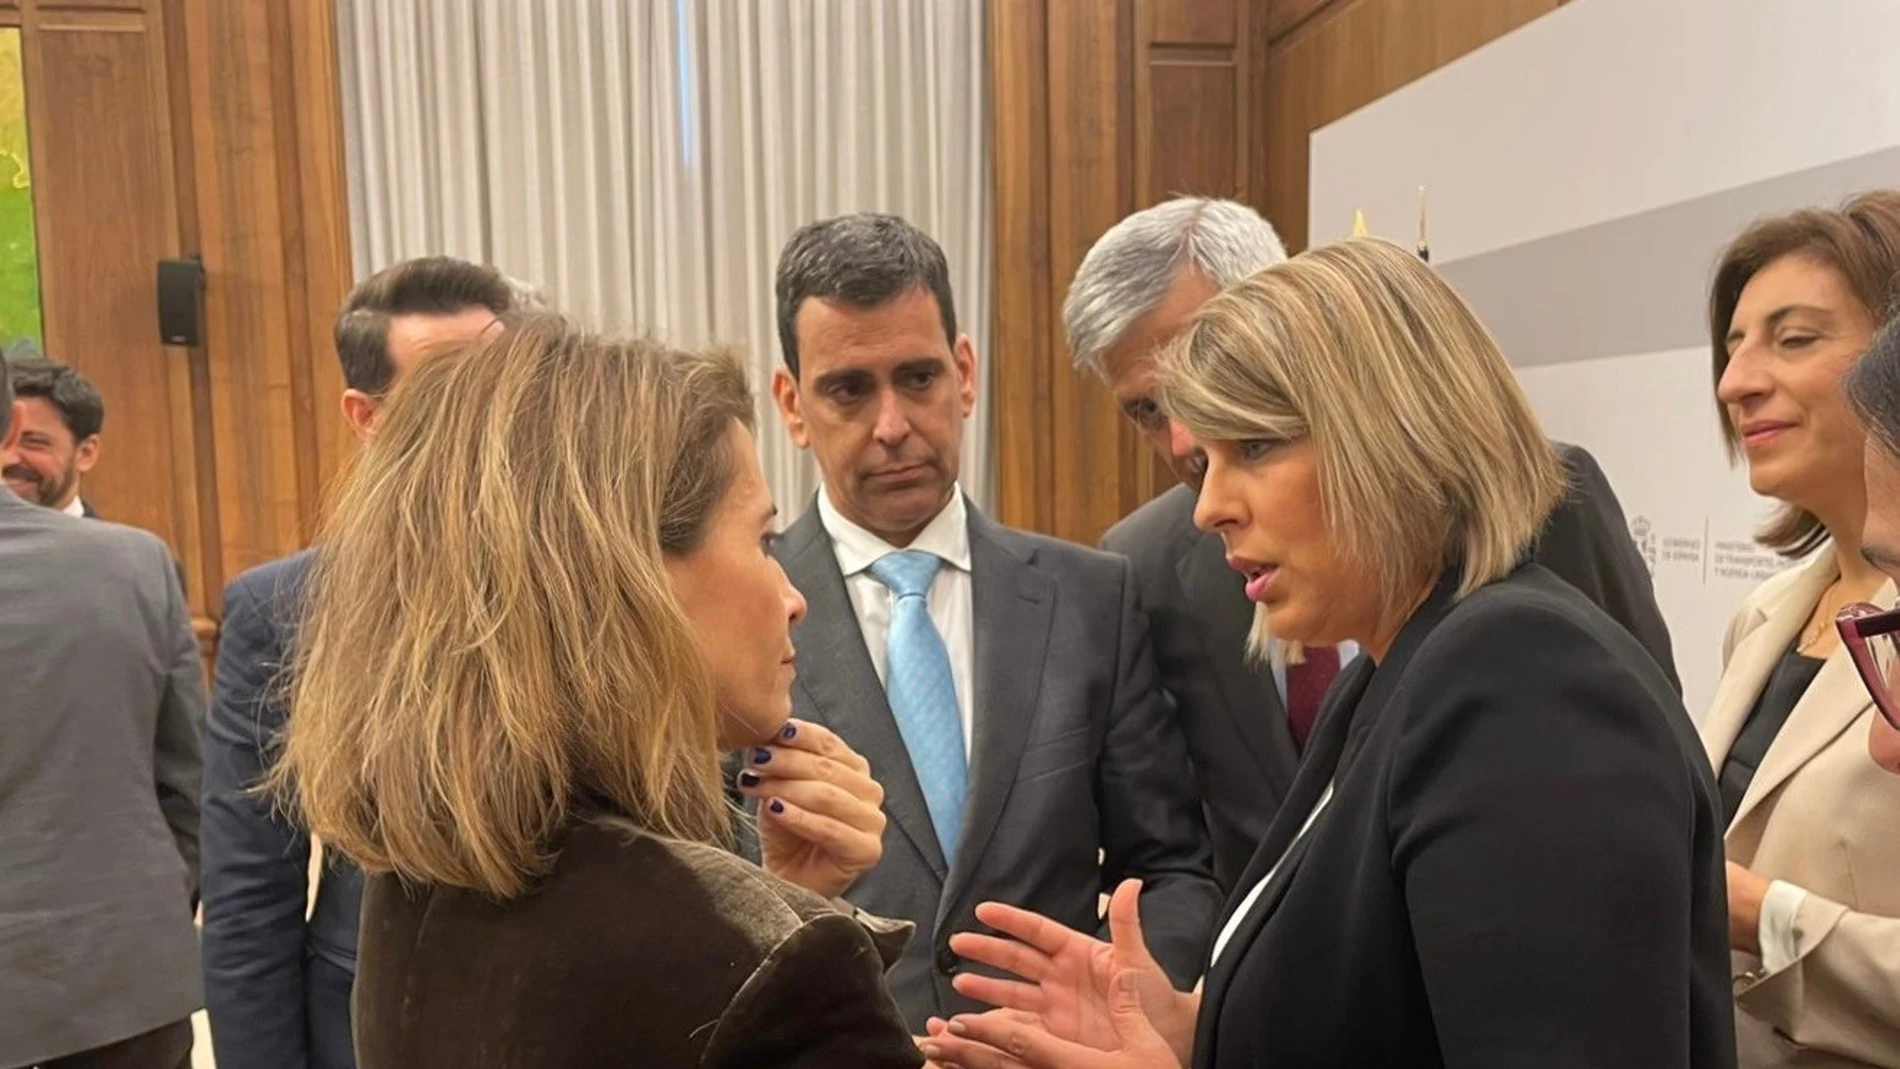 La alcaldesa de Cartagena a la ministra Sánchez "decisiones definitivas" para el AVE en enero y declina asistir a Murcia